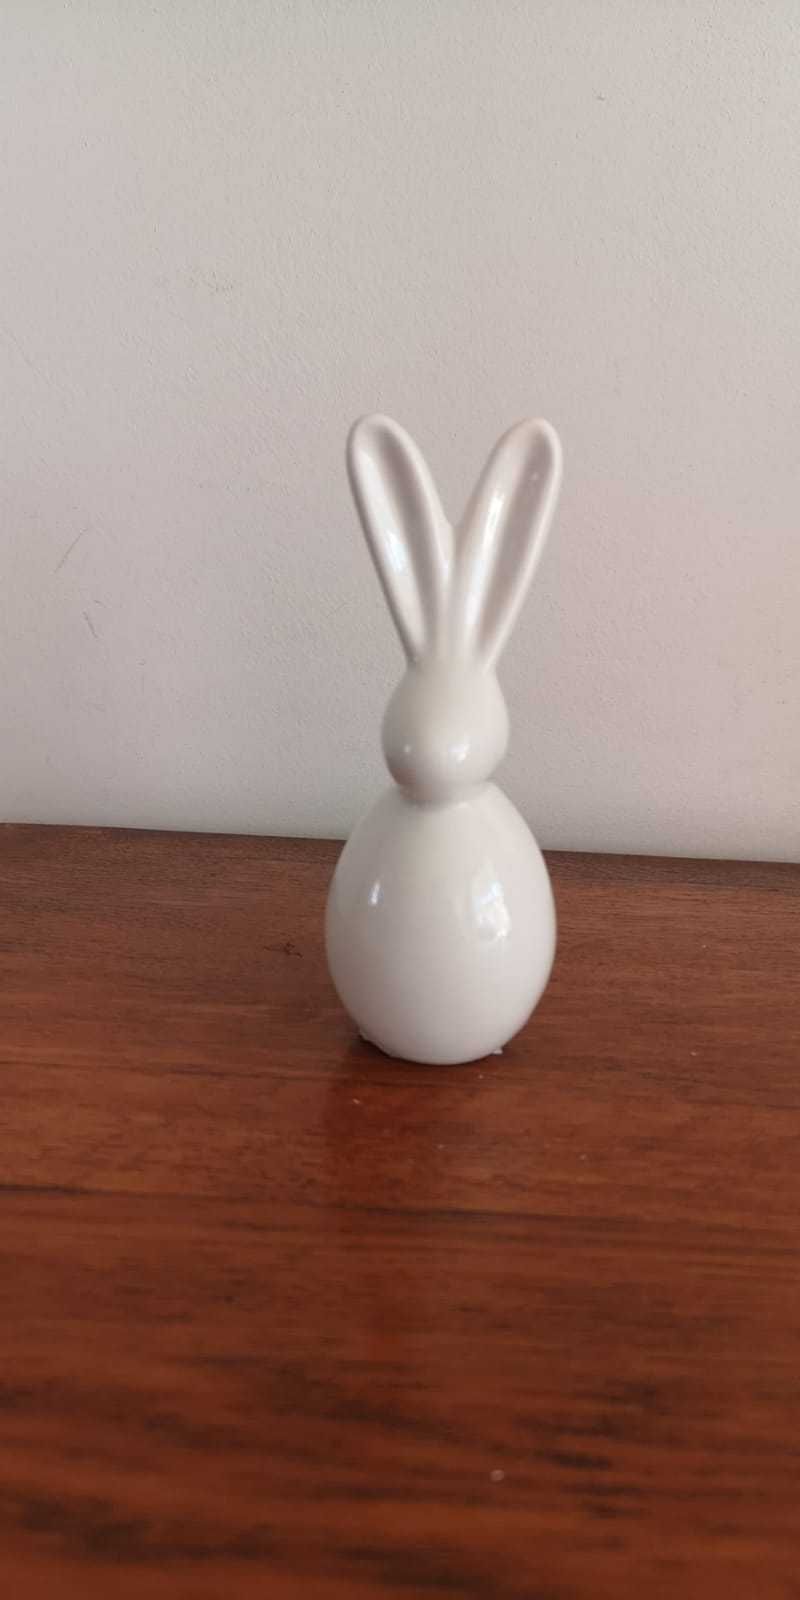 Figurka królik zając Home&you dekoracja ozdoba Wielkanoc Święta